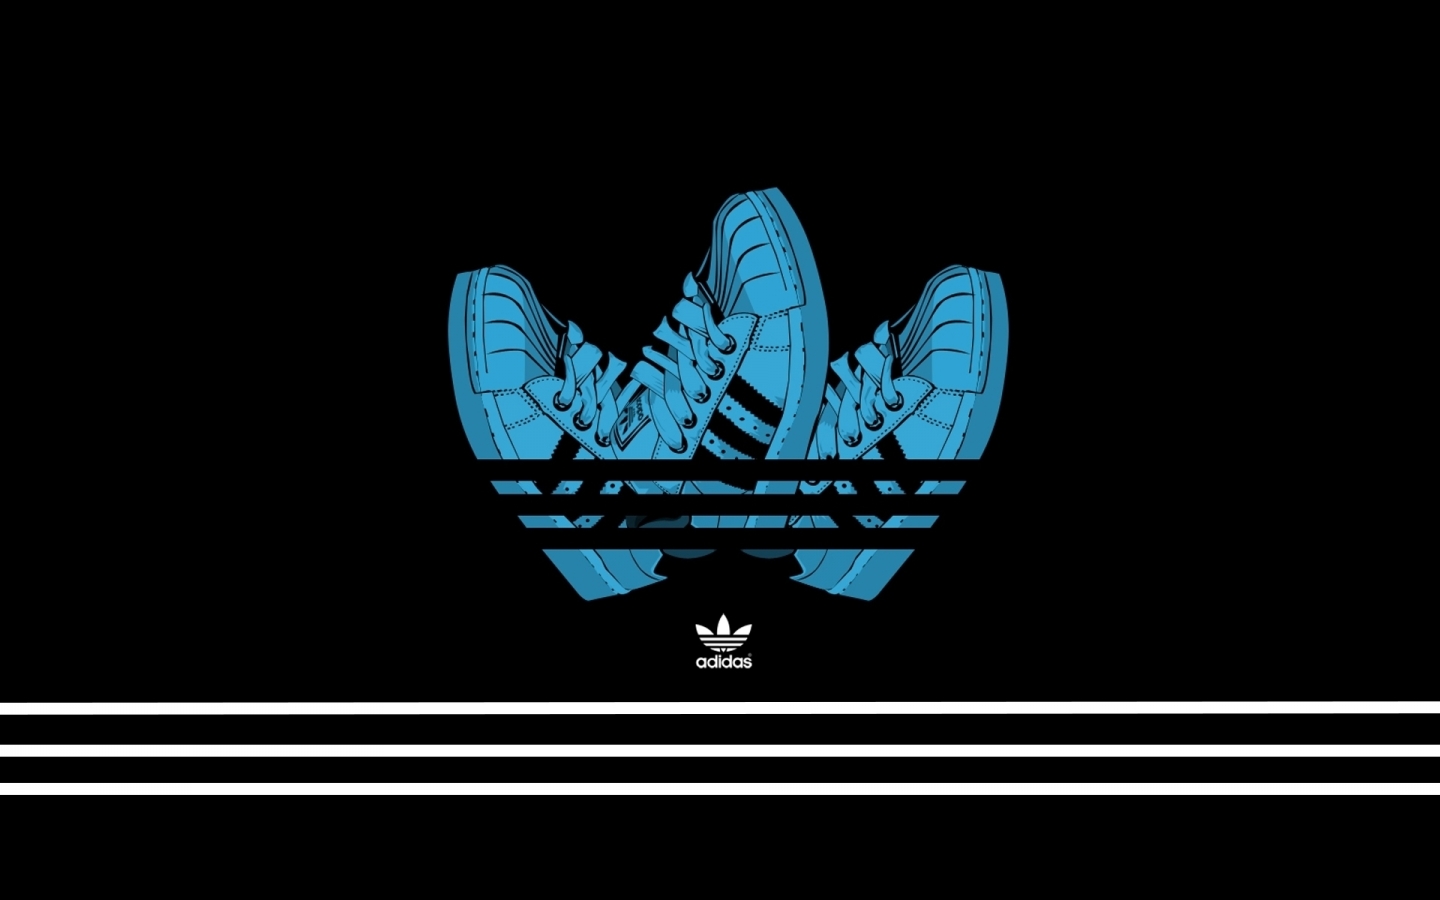 Adidas Creative Logo Design for 1440 x 900 widescreen resolution